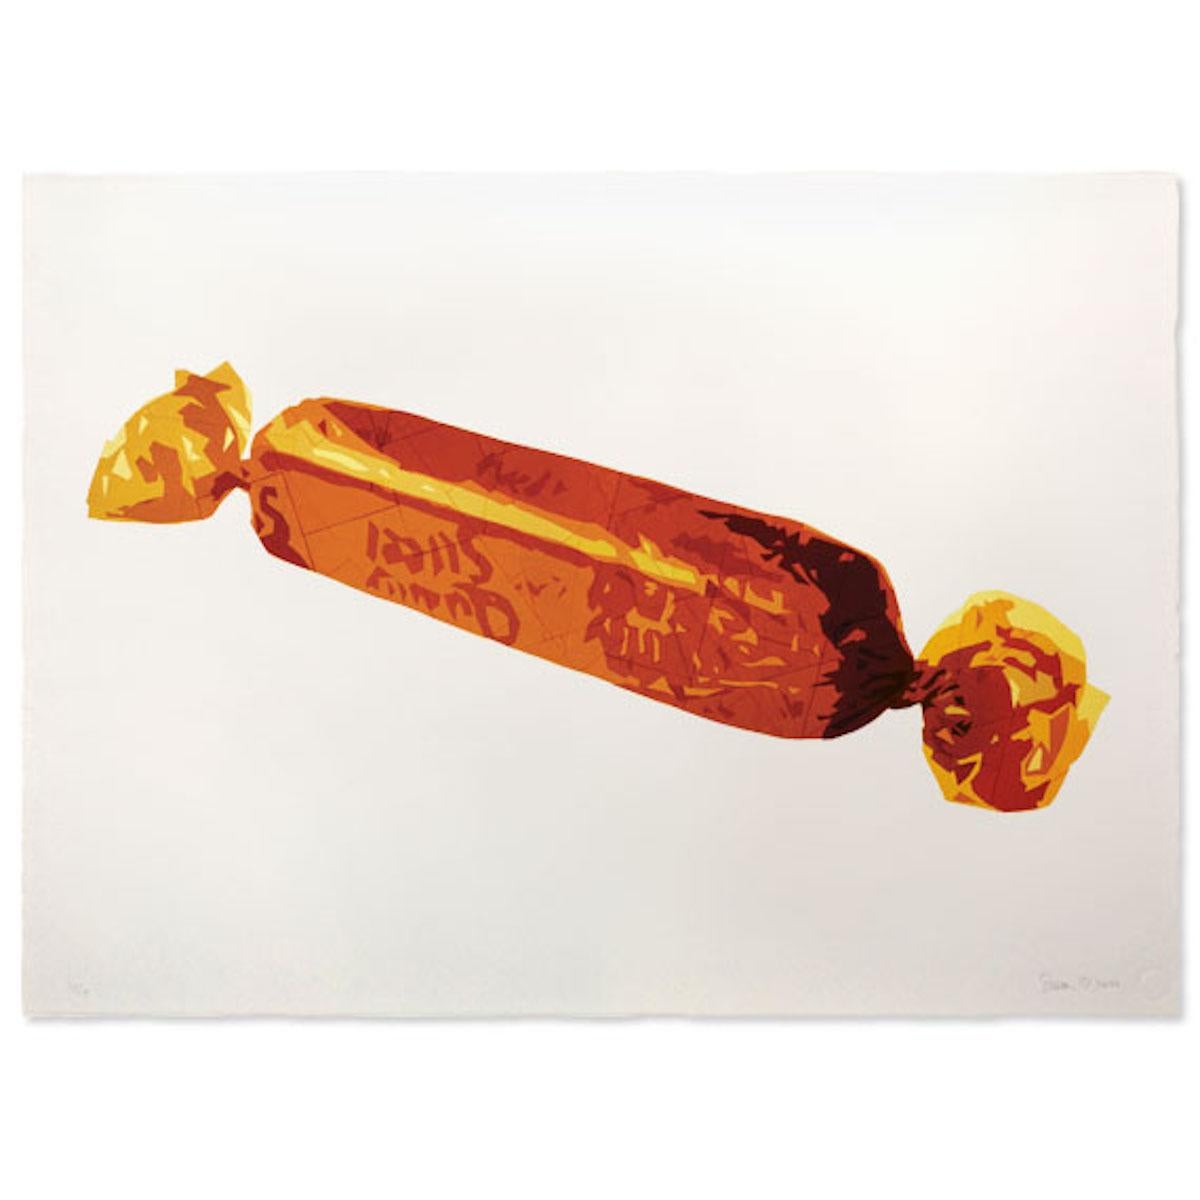 Simon Dry Interior Print - Gold Finger, Sweetie Art, Food Art, Still Life Print, Chocolate Art, Easter Art